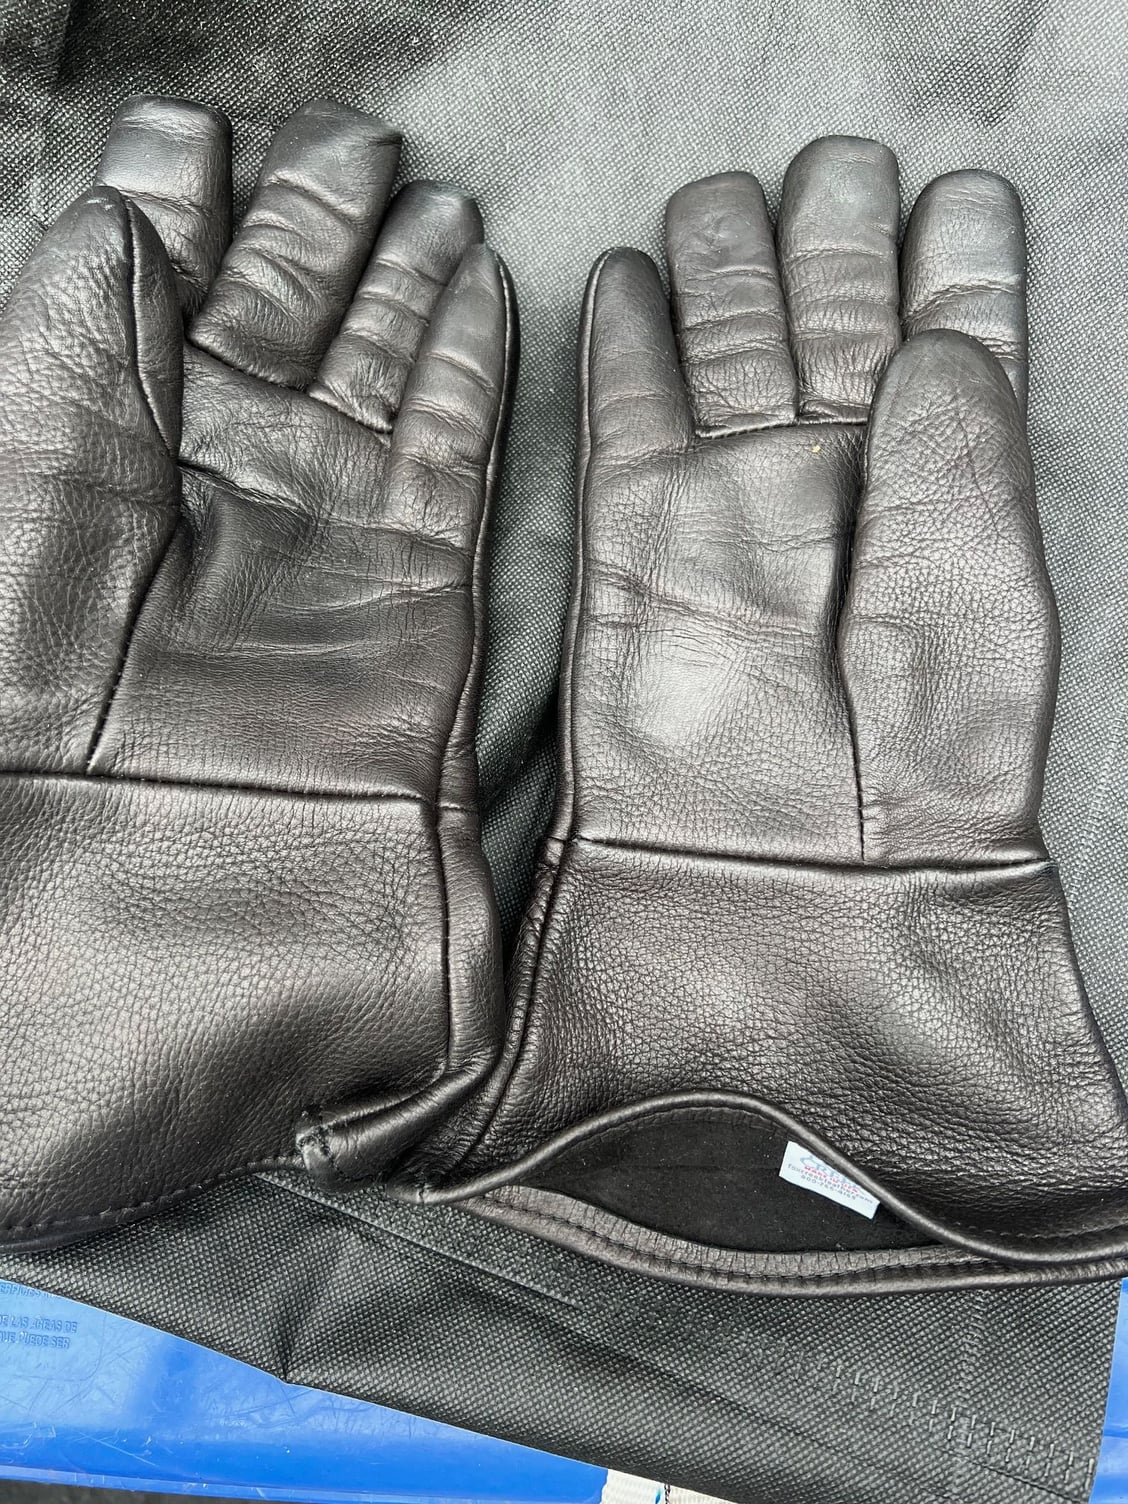 Elkskin Work Gloves - Fox Creek Leather